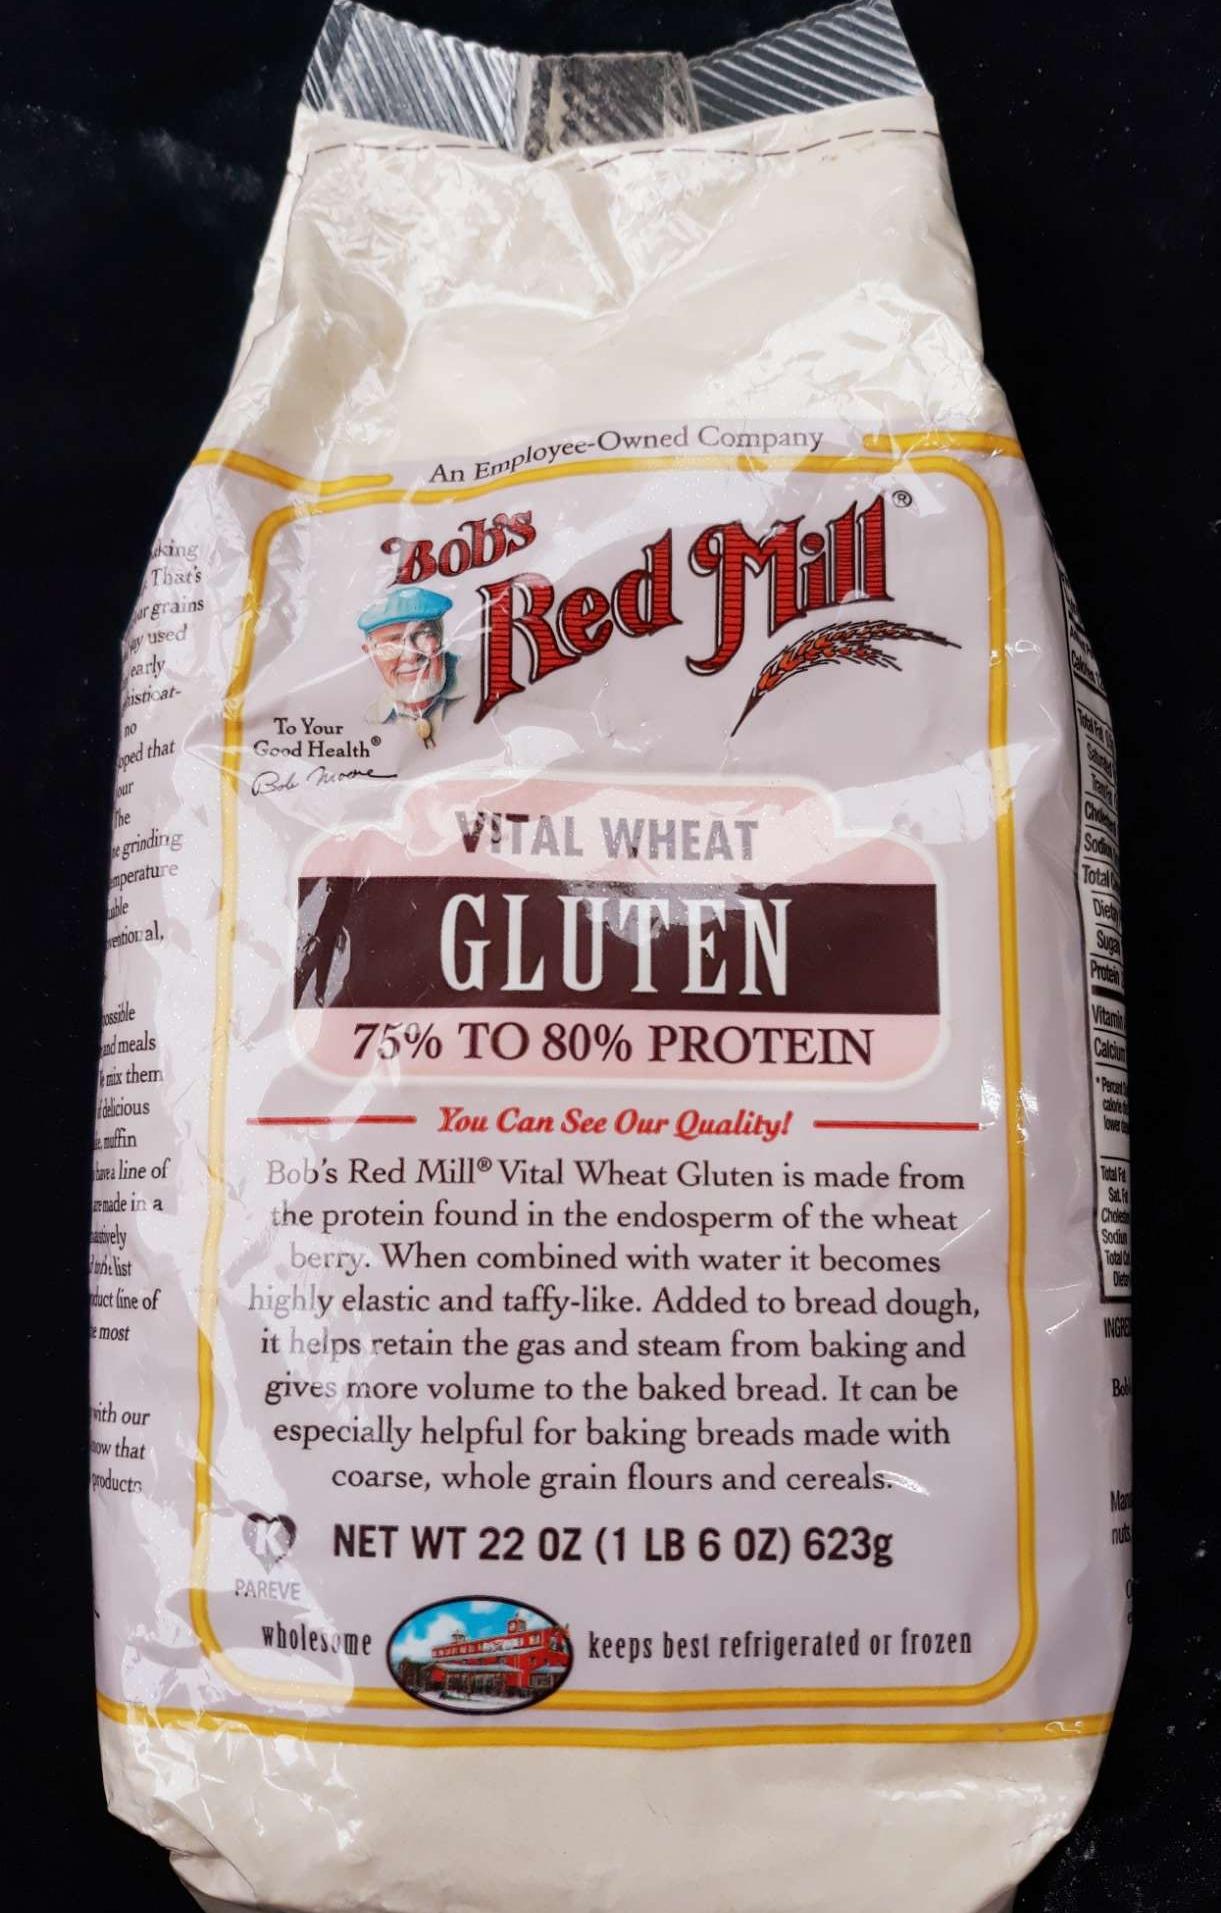 Bột mì căn Vital wheat gluten hiệu Bob's Red Mill